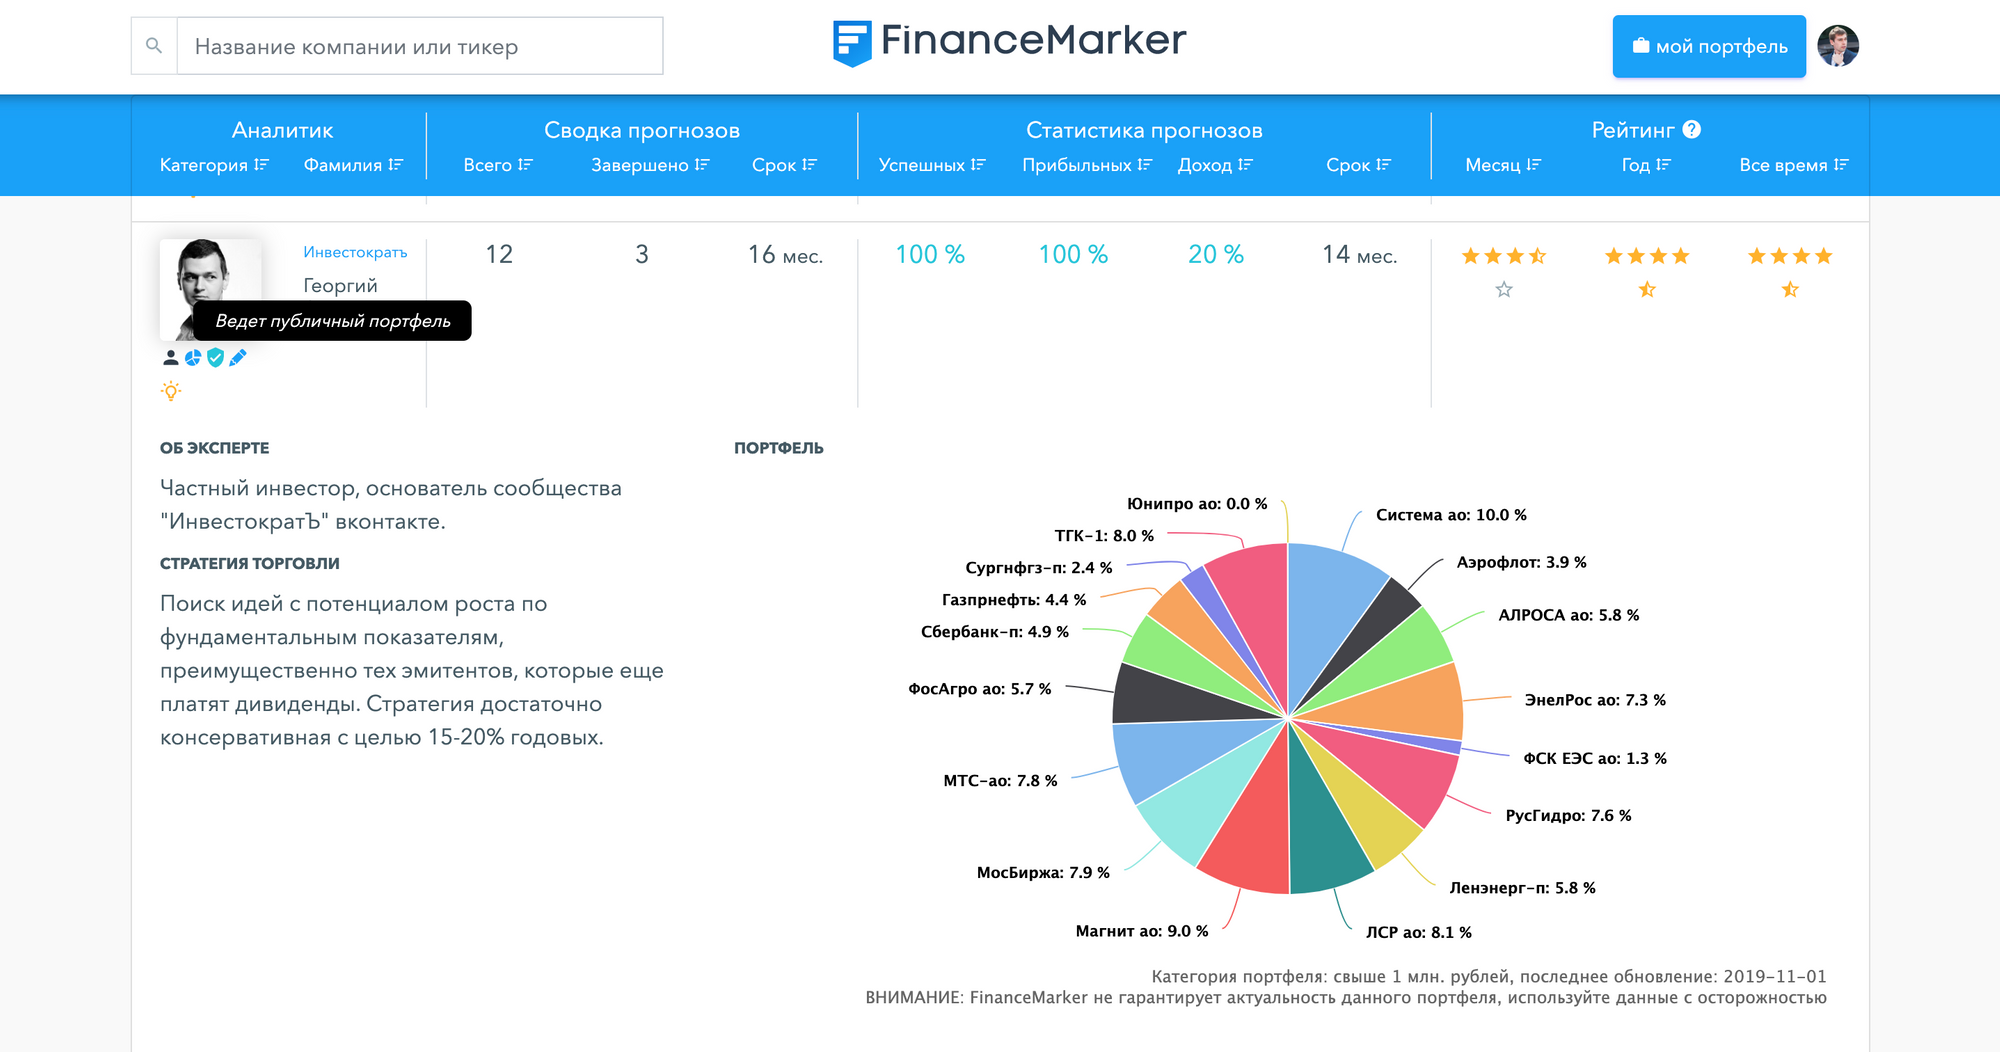 Как смотреть портфели экспертов на FinanceMarker.ru?